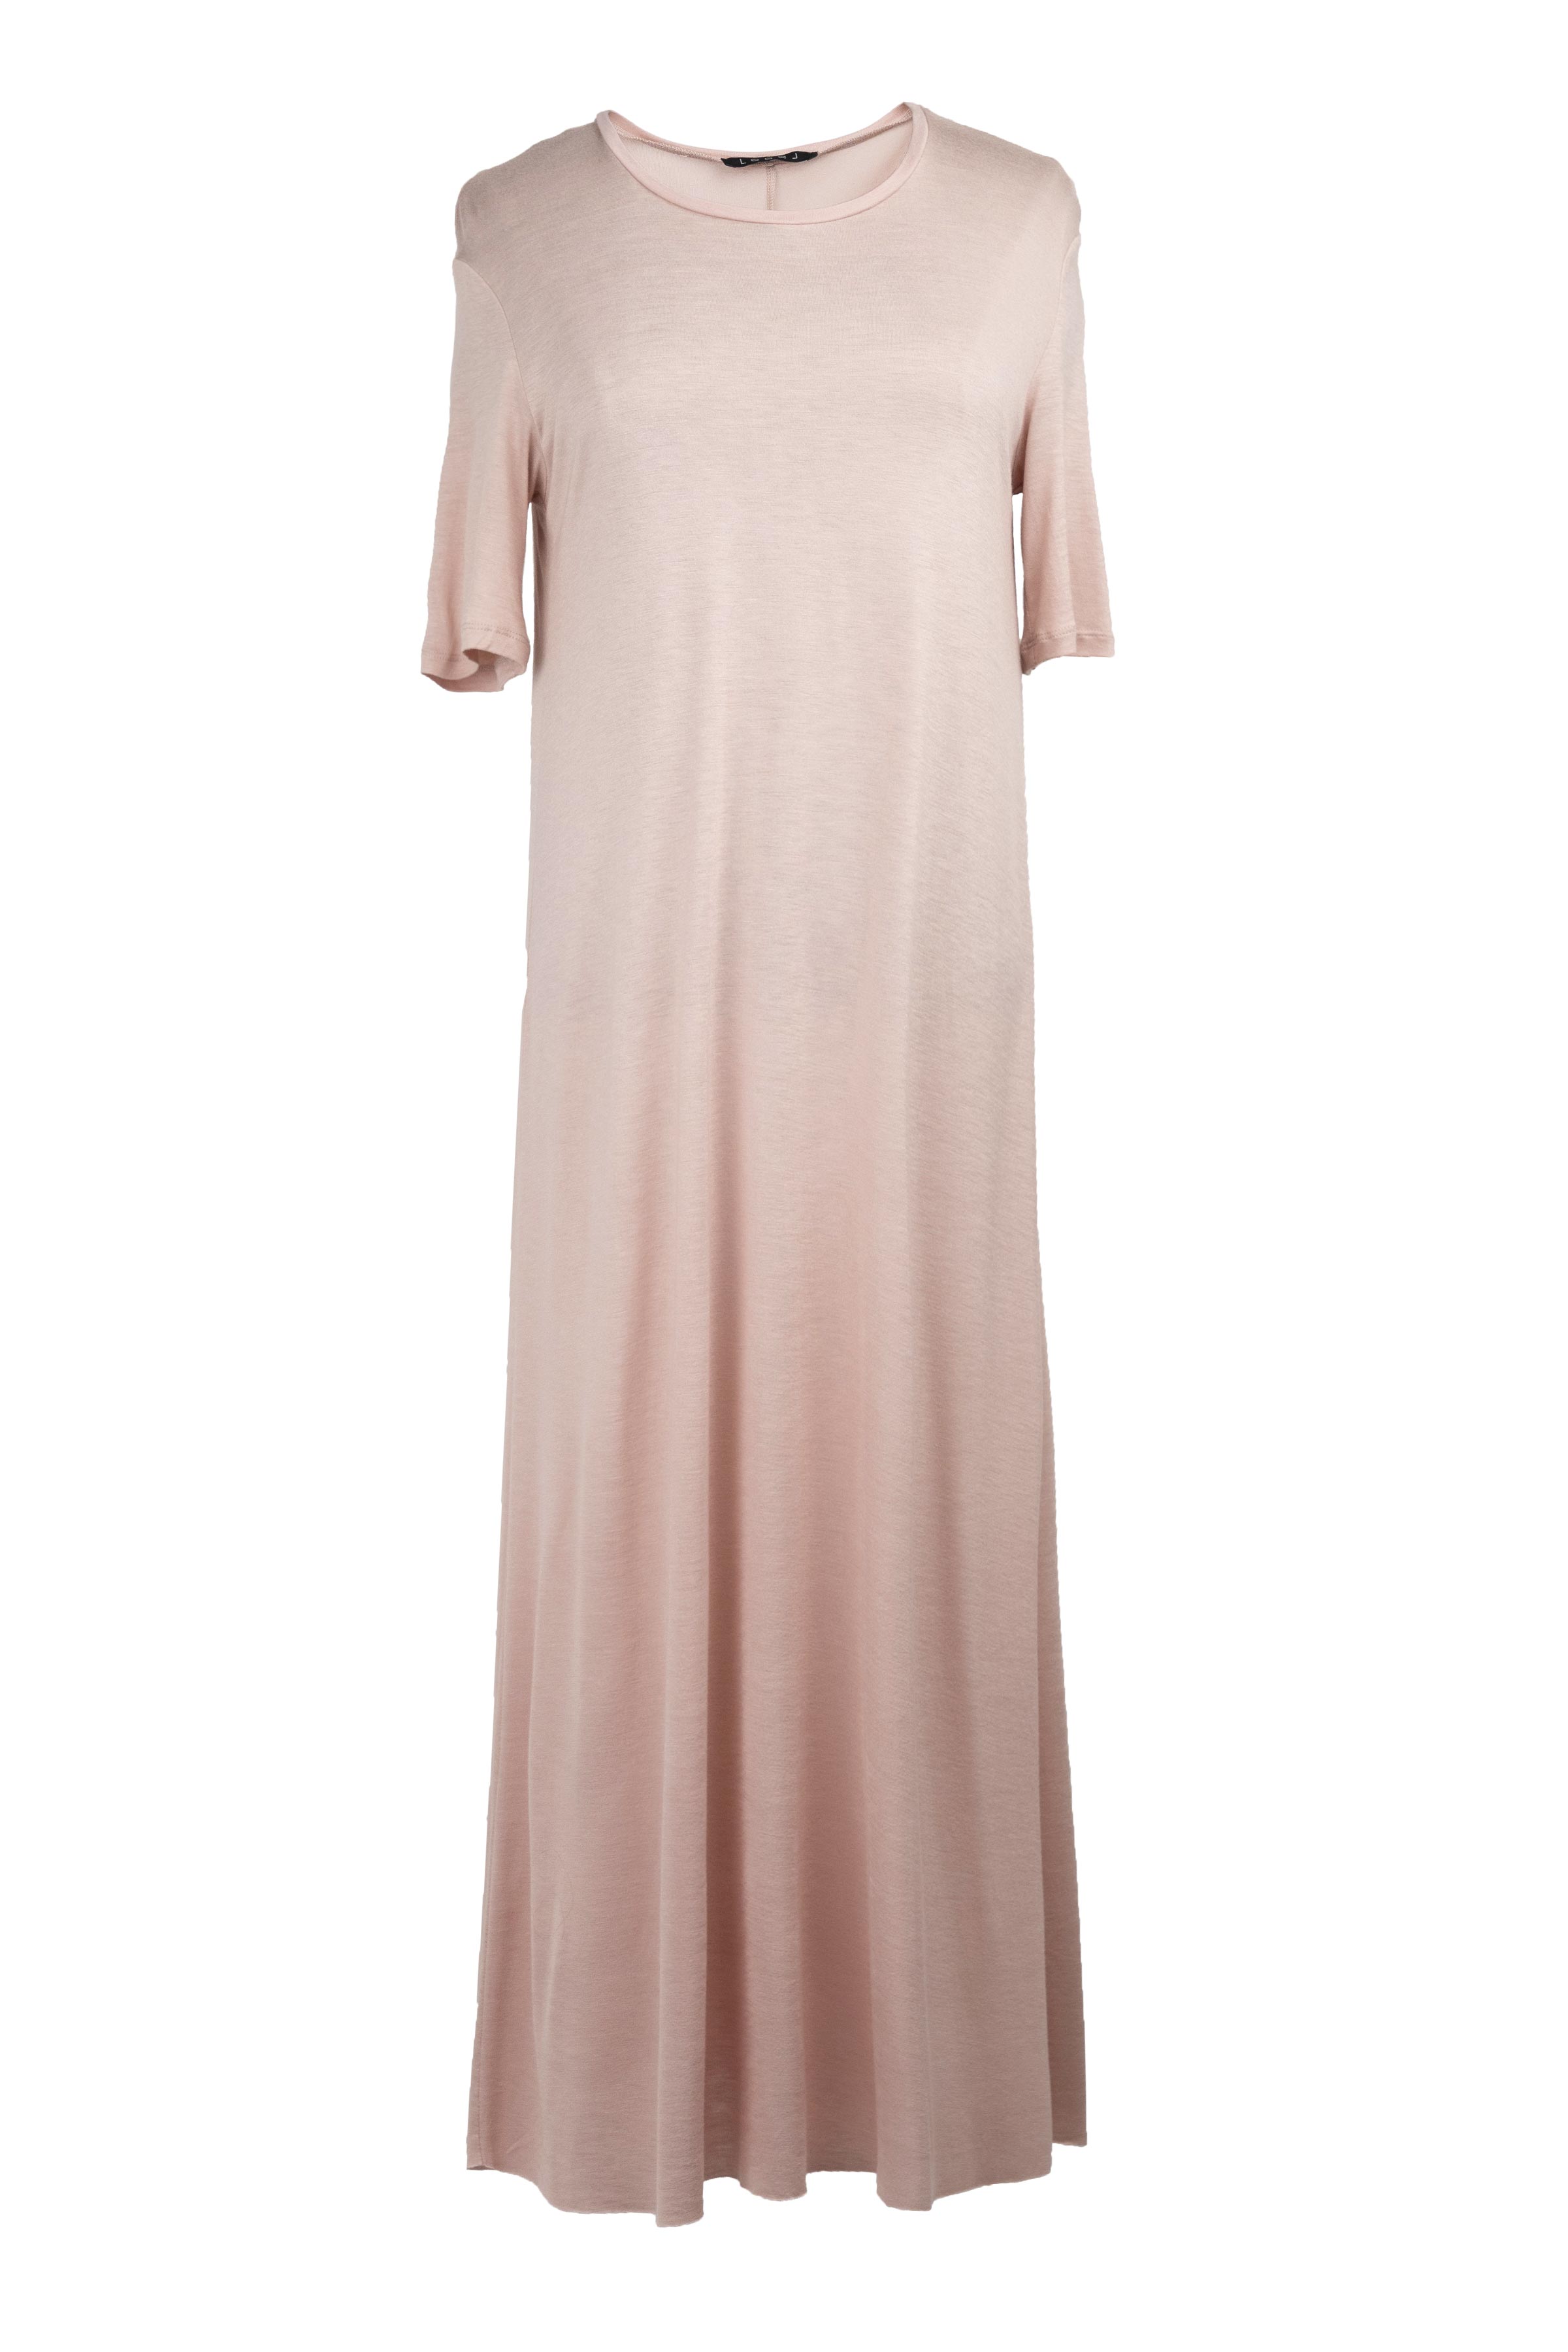 Платье база широкое короткое, короткий рукав 41 Розовый мрамор (marbre rose) от Lesel (Лесель)! Заказывайте по ✆ 8 (800) 777 02 37